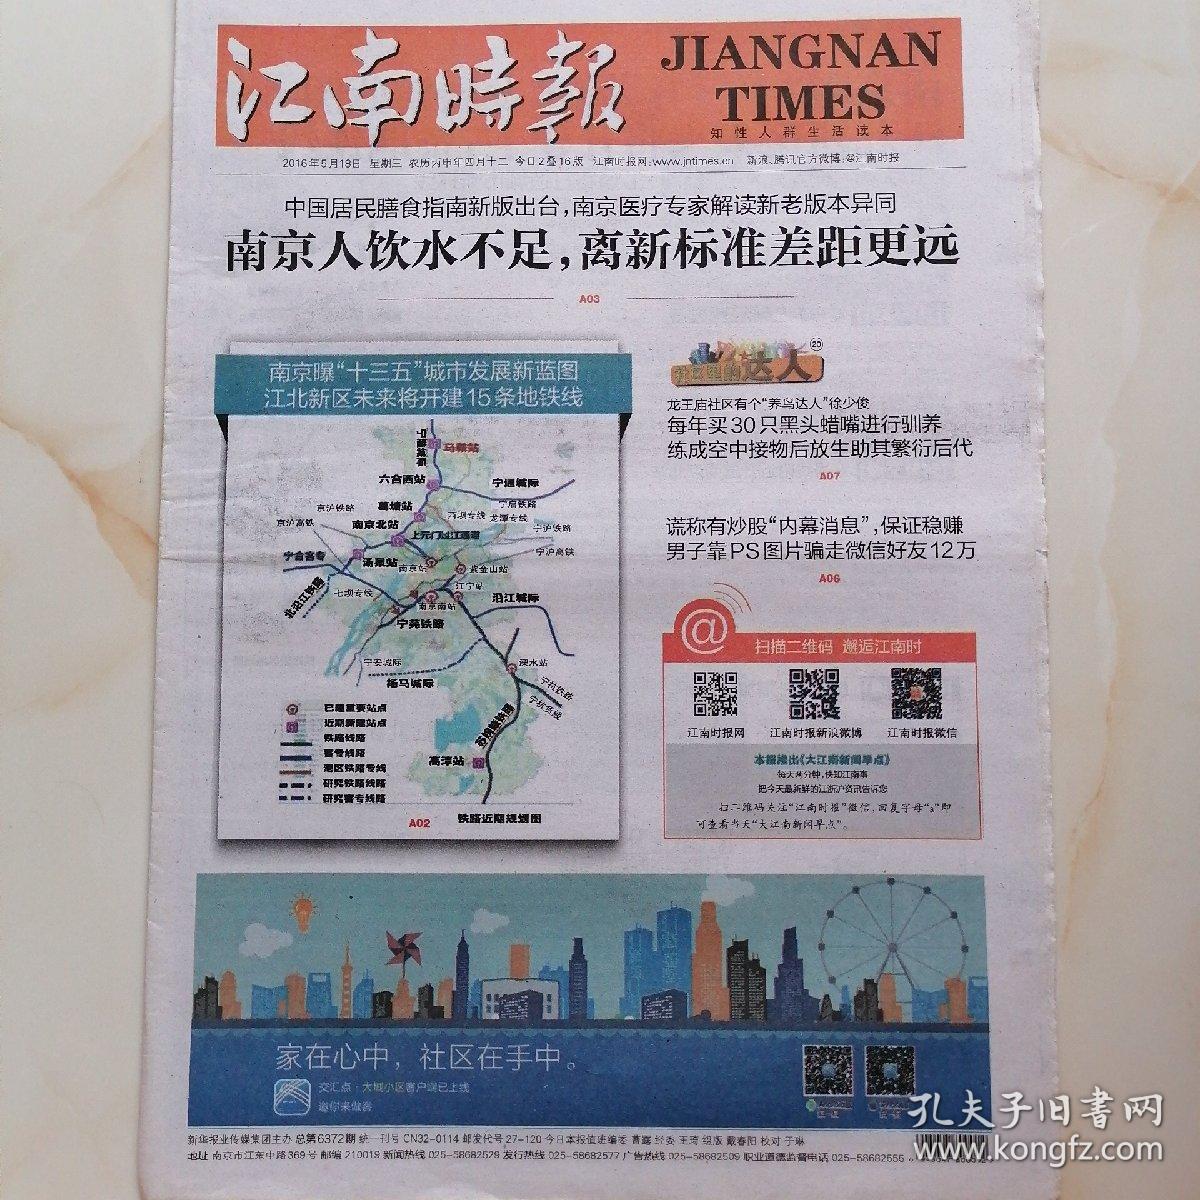 江南时报2016年5月18日(八开16版)南京人饮水不足，离新标准差距很远;南京暴"十三五"城市发展蓝图江北新区未来将建15条地铁线。